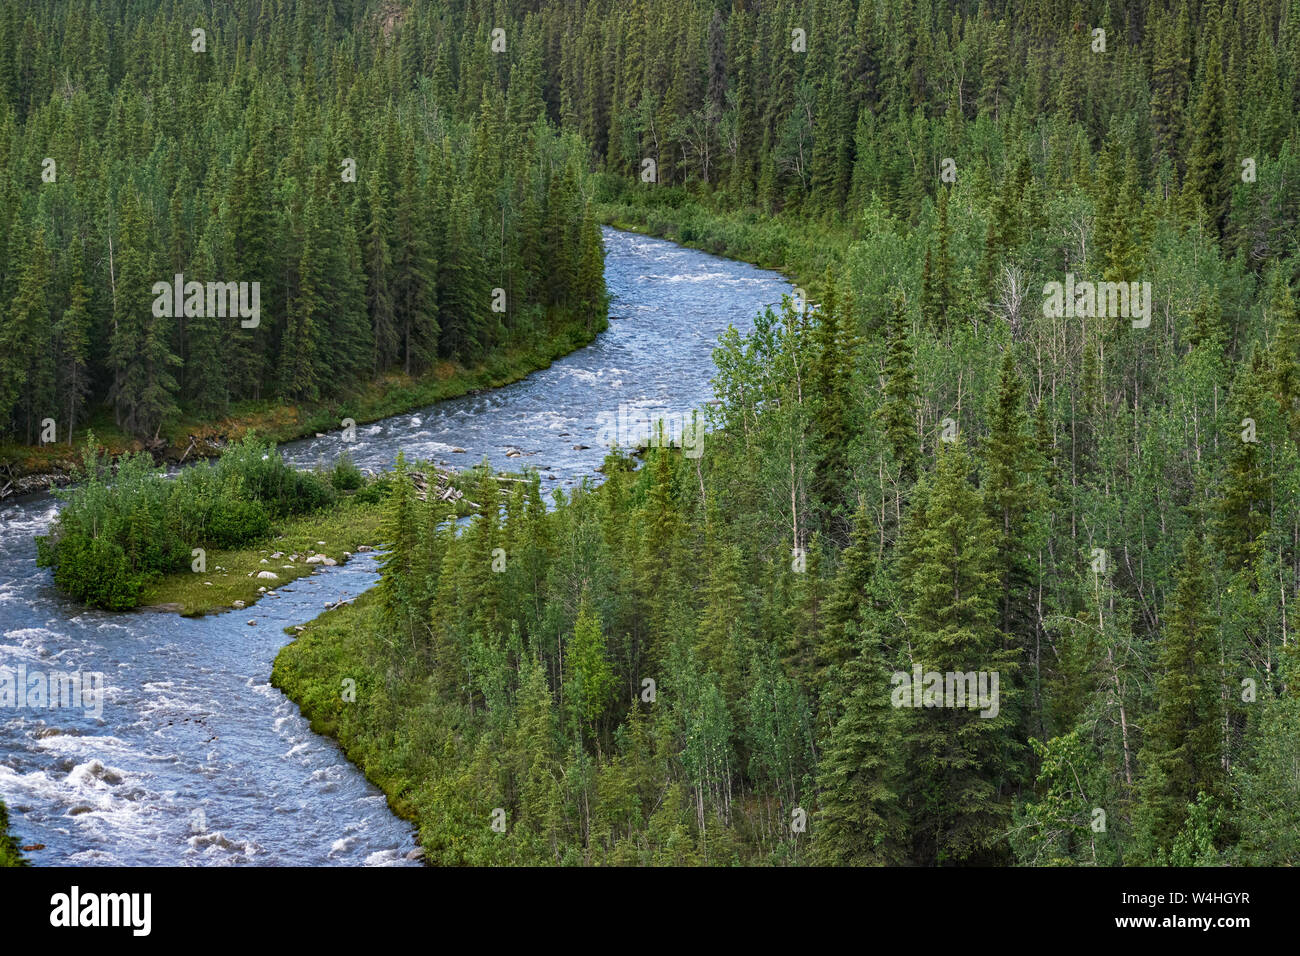 Guardando in giù da un ponte sopra il fiume nenana a sud-ovest di Fairbanks in Alaska, mostrando il fiume che scorre velocemente attraverso un bosco misto Foto Stock